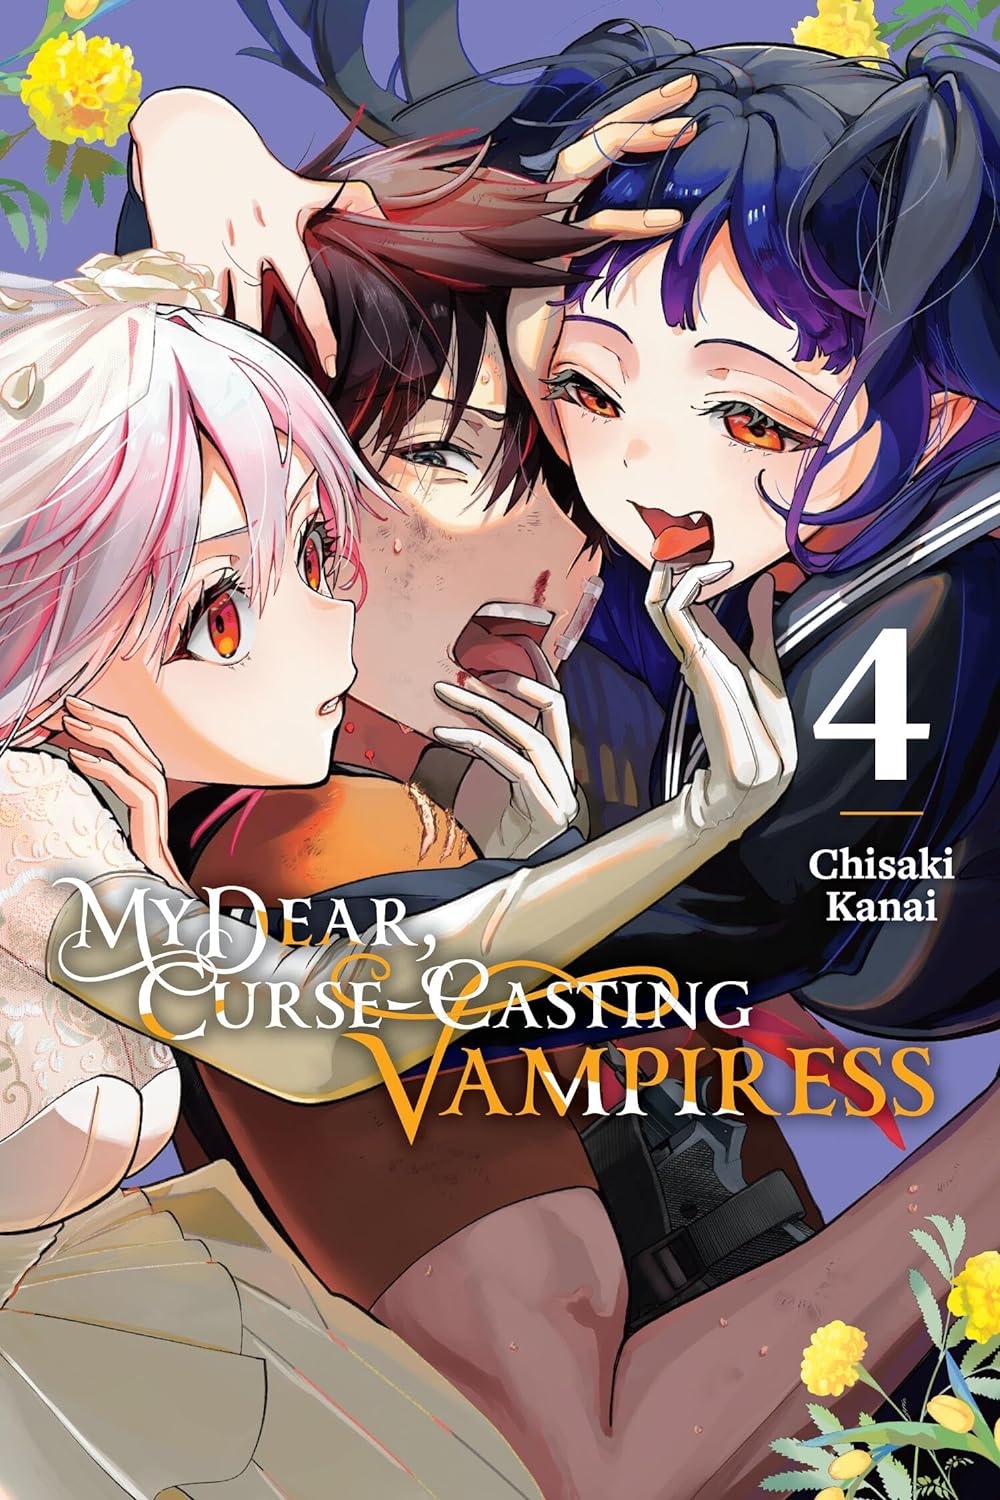 My Dear, Curse-Casting Vampiress GN Vol 04